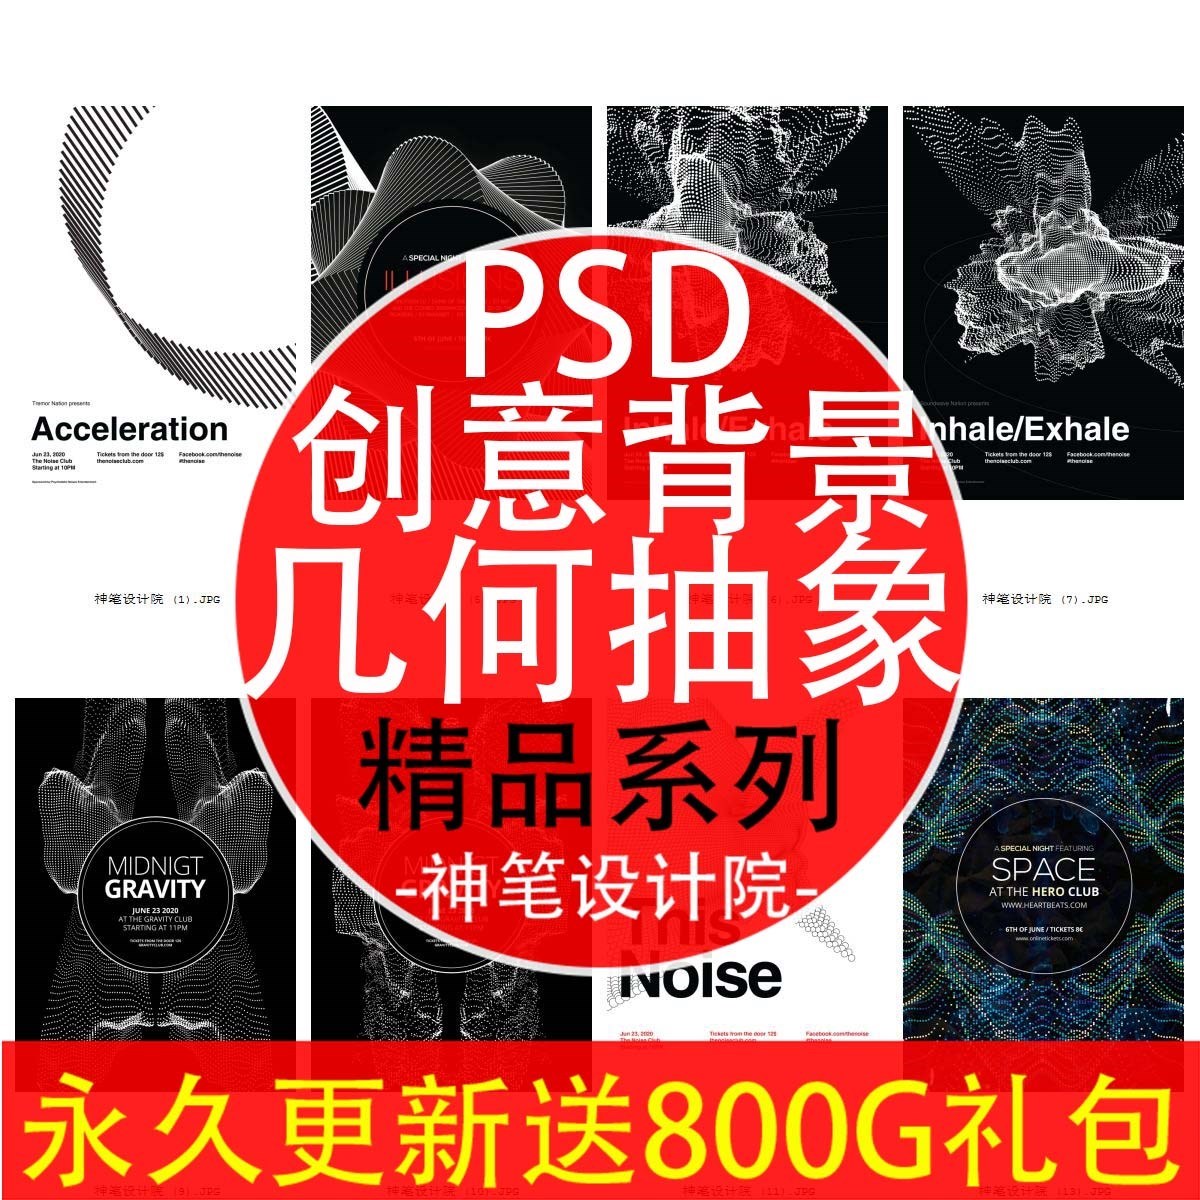 s1343国外抽象黑白几何线条元素时尚创意海报PSD平面设计素材模板